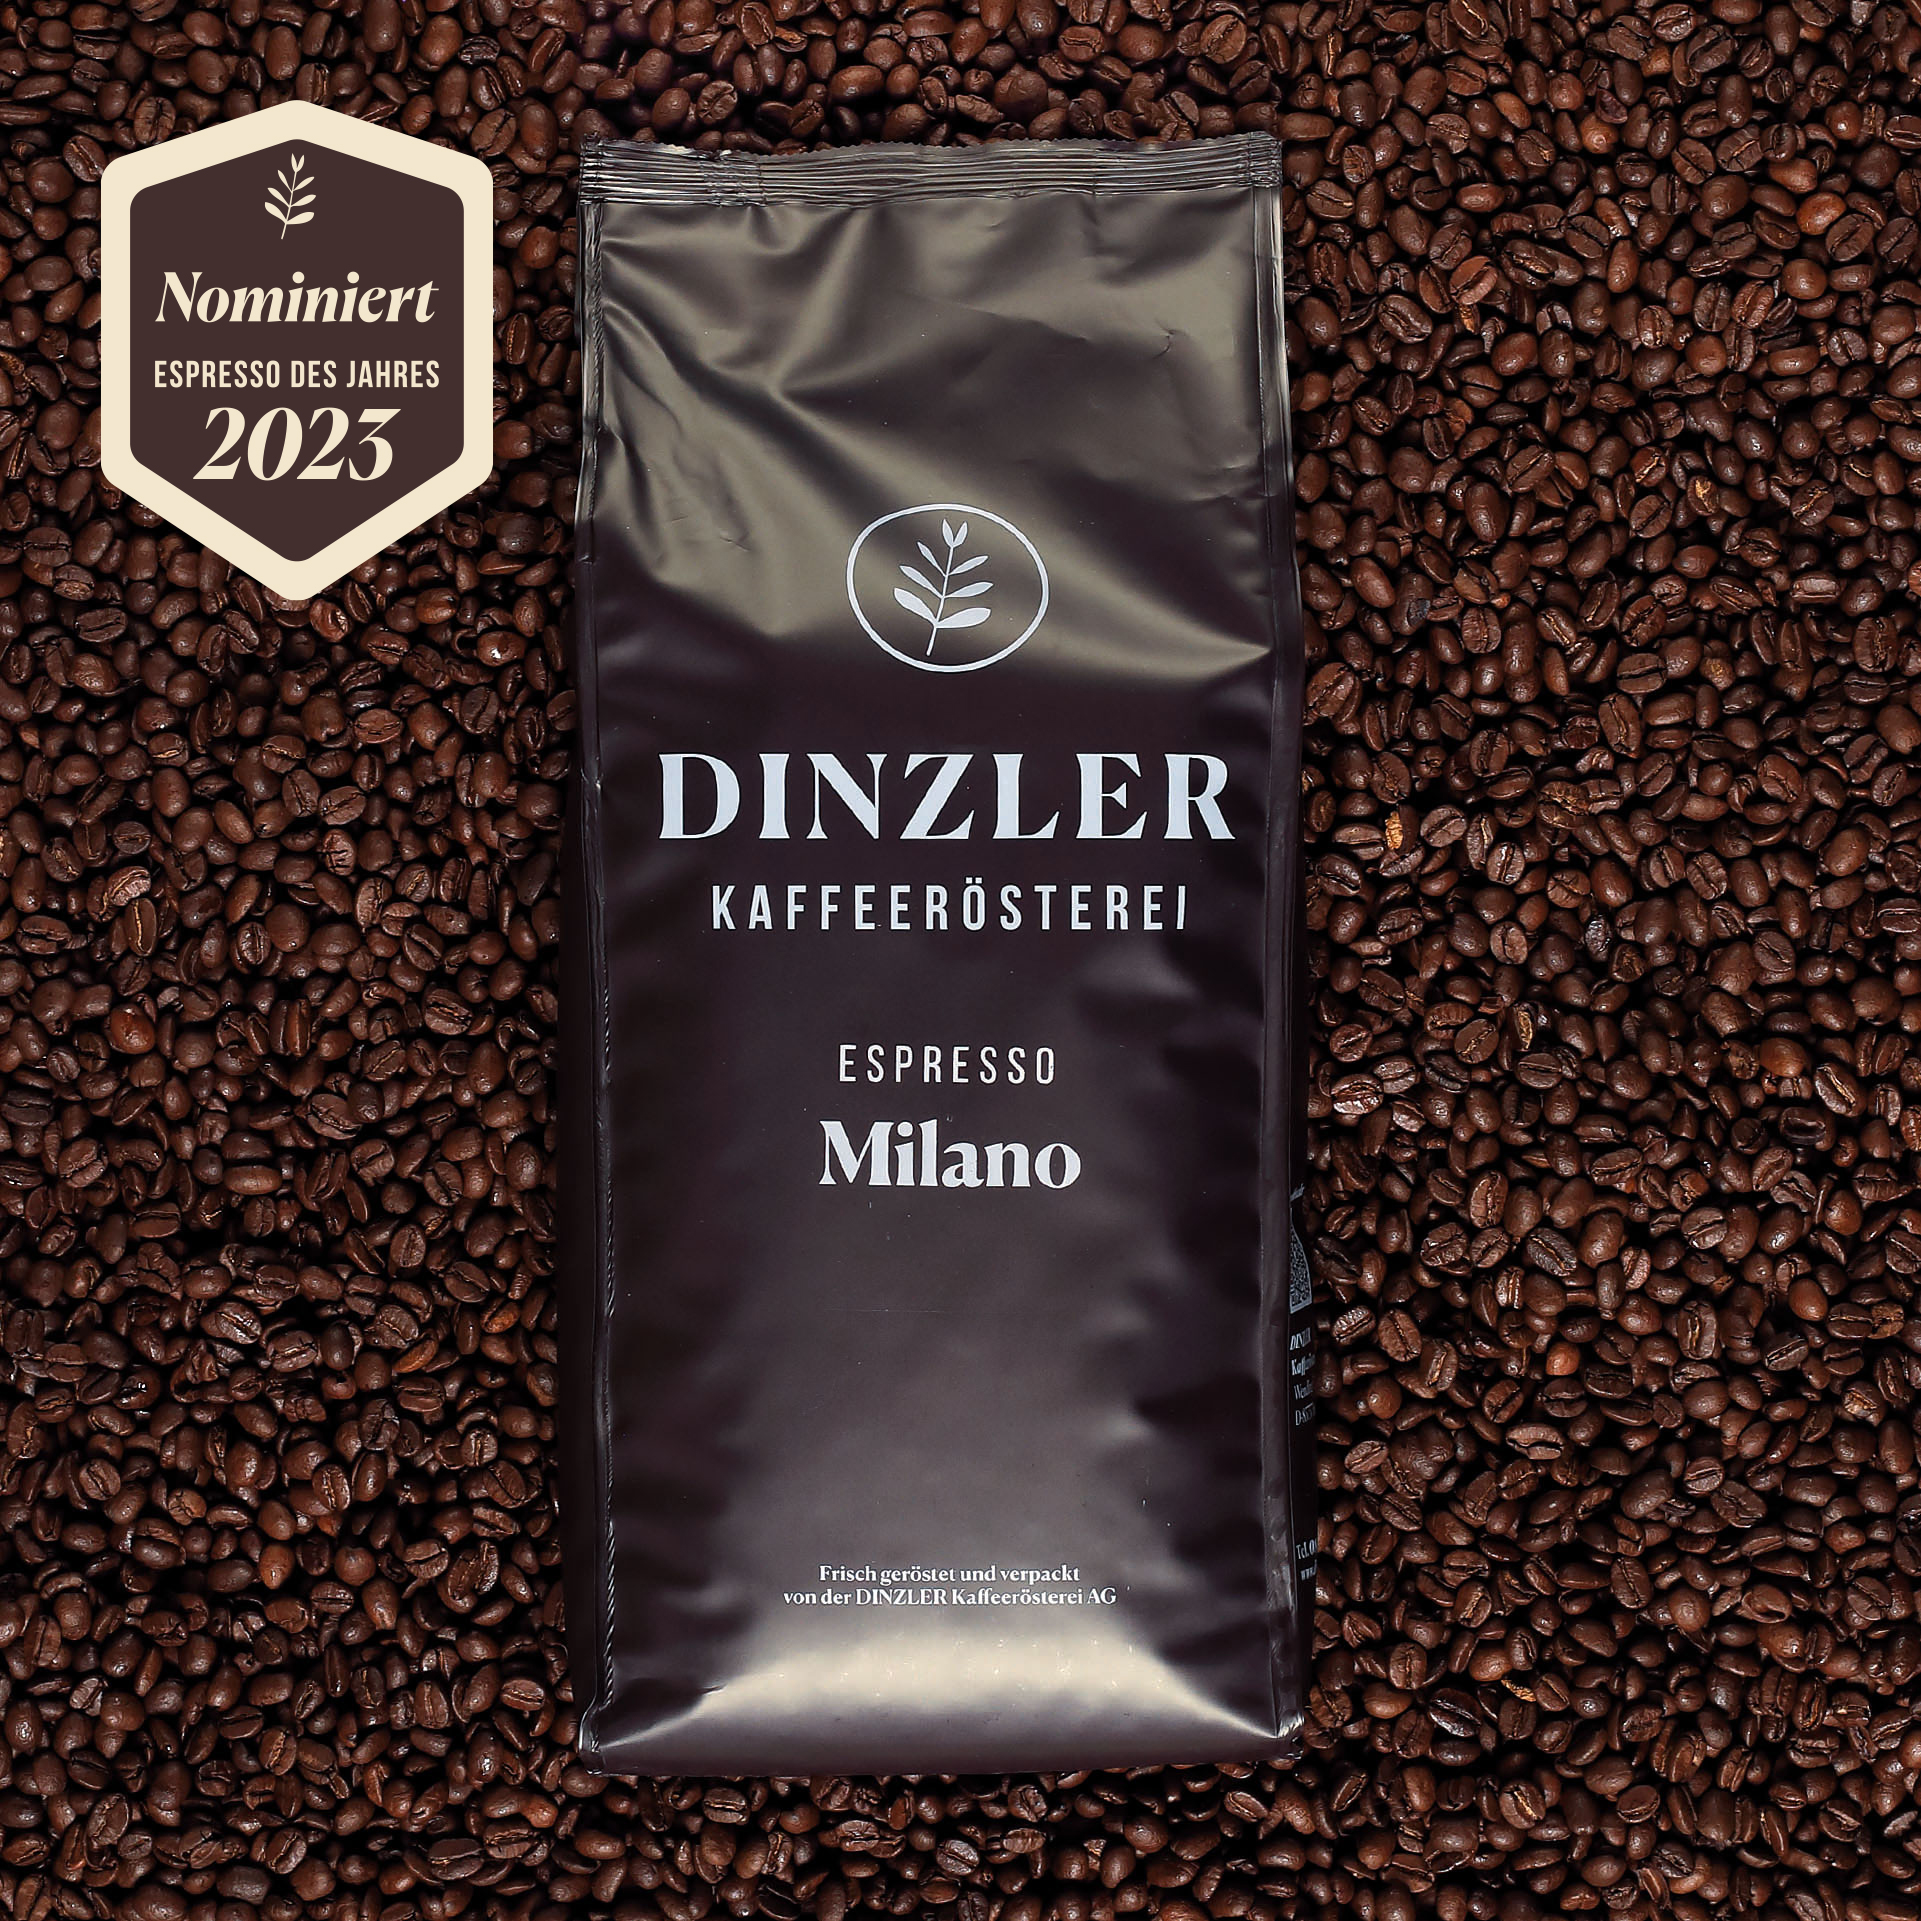 Produktbild DINZLER Espresso Milano| DINZLER Kaffeerösterei